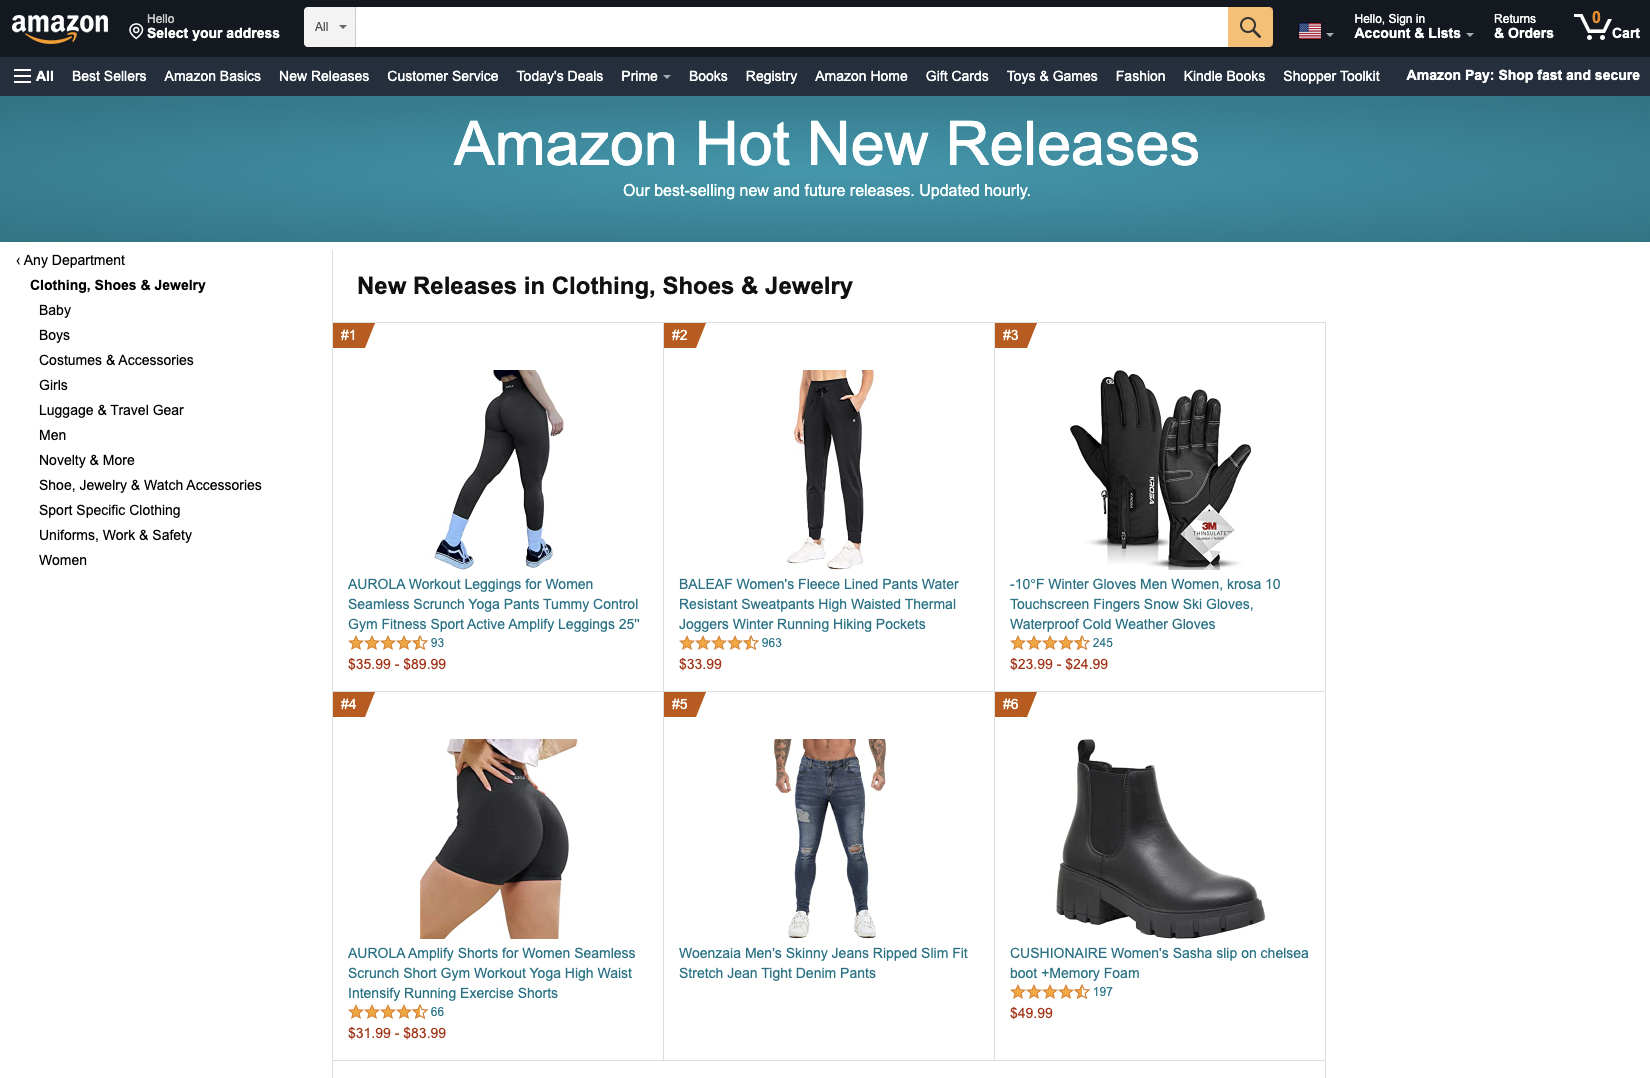 Amazon New Releases example